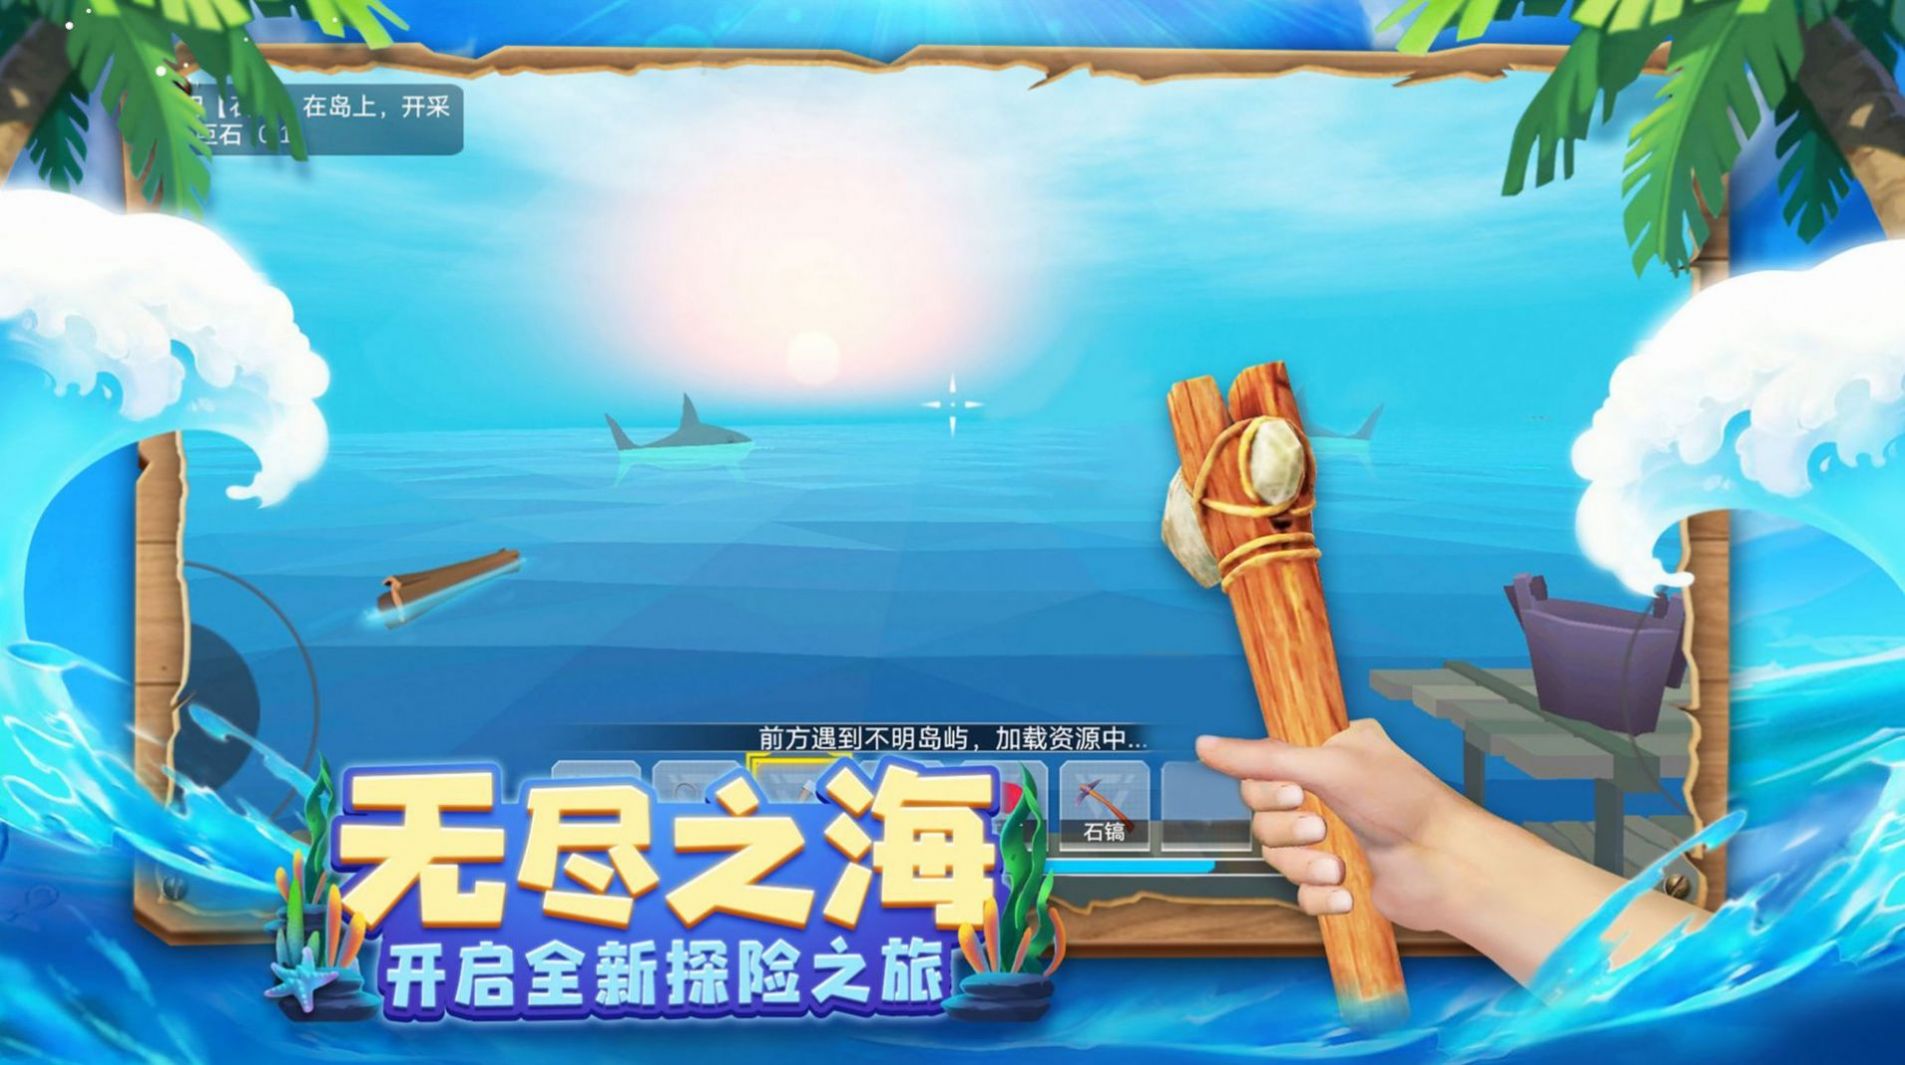 木筏历险记游戏官方手机版截图8: